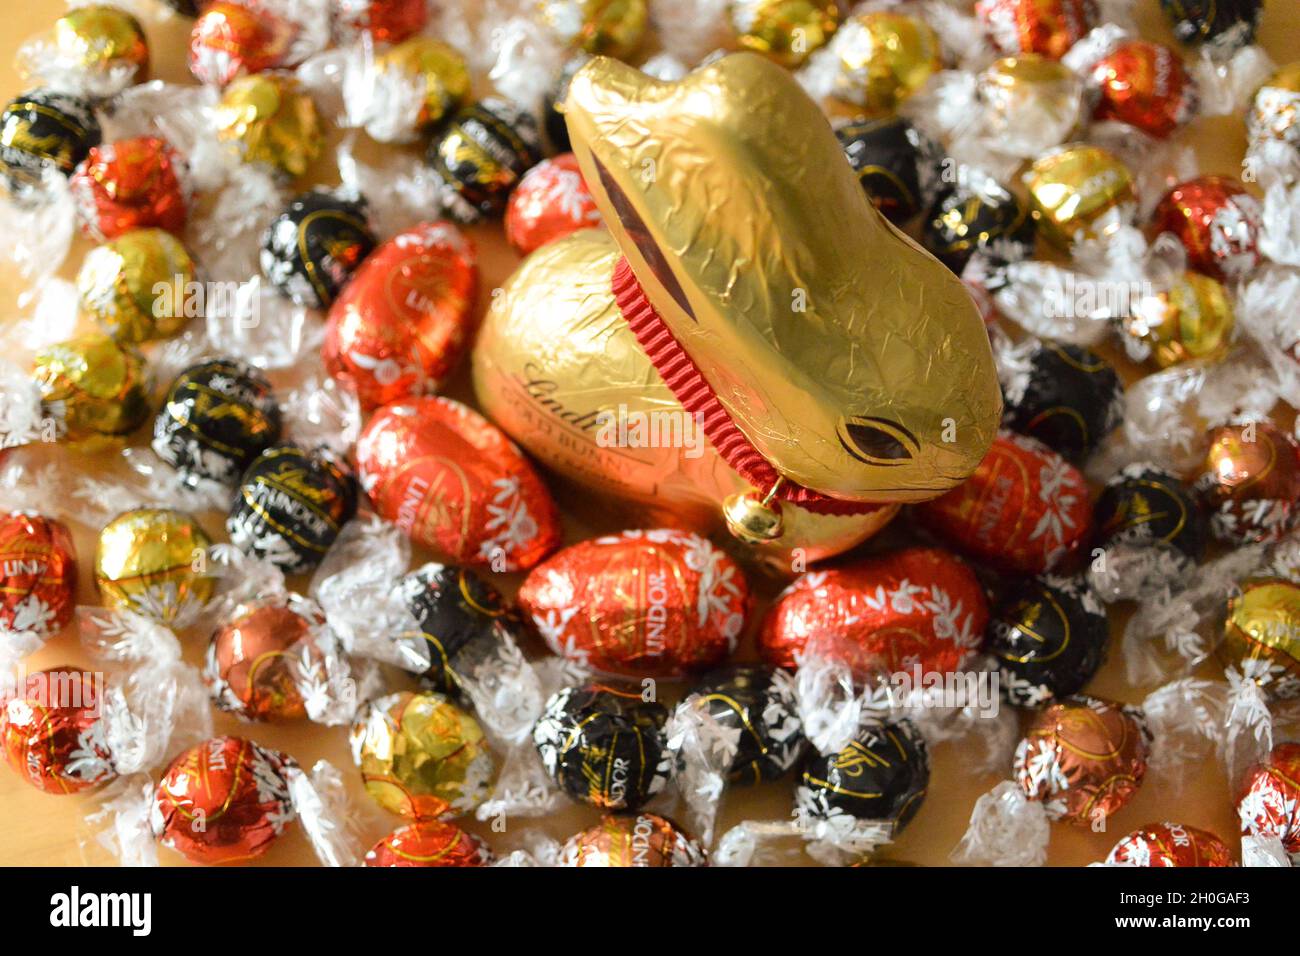 El icónico conejito de chocolate Lindt envuelto en papel de aluminio dorado con un distintivo cuello rojo y campana, rodeado de mini huevos de Pascua de chocolate y bolas de lindor Foto de stock